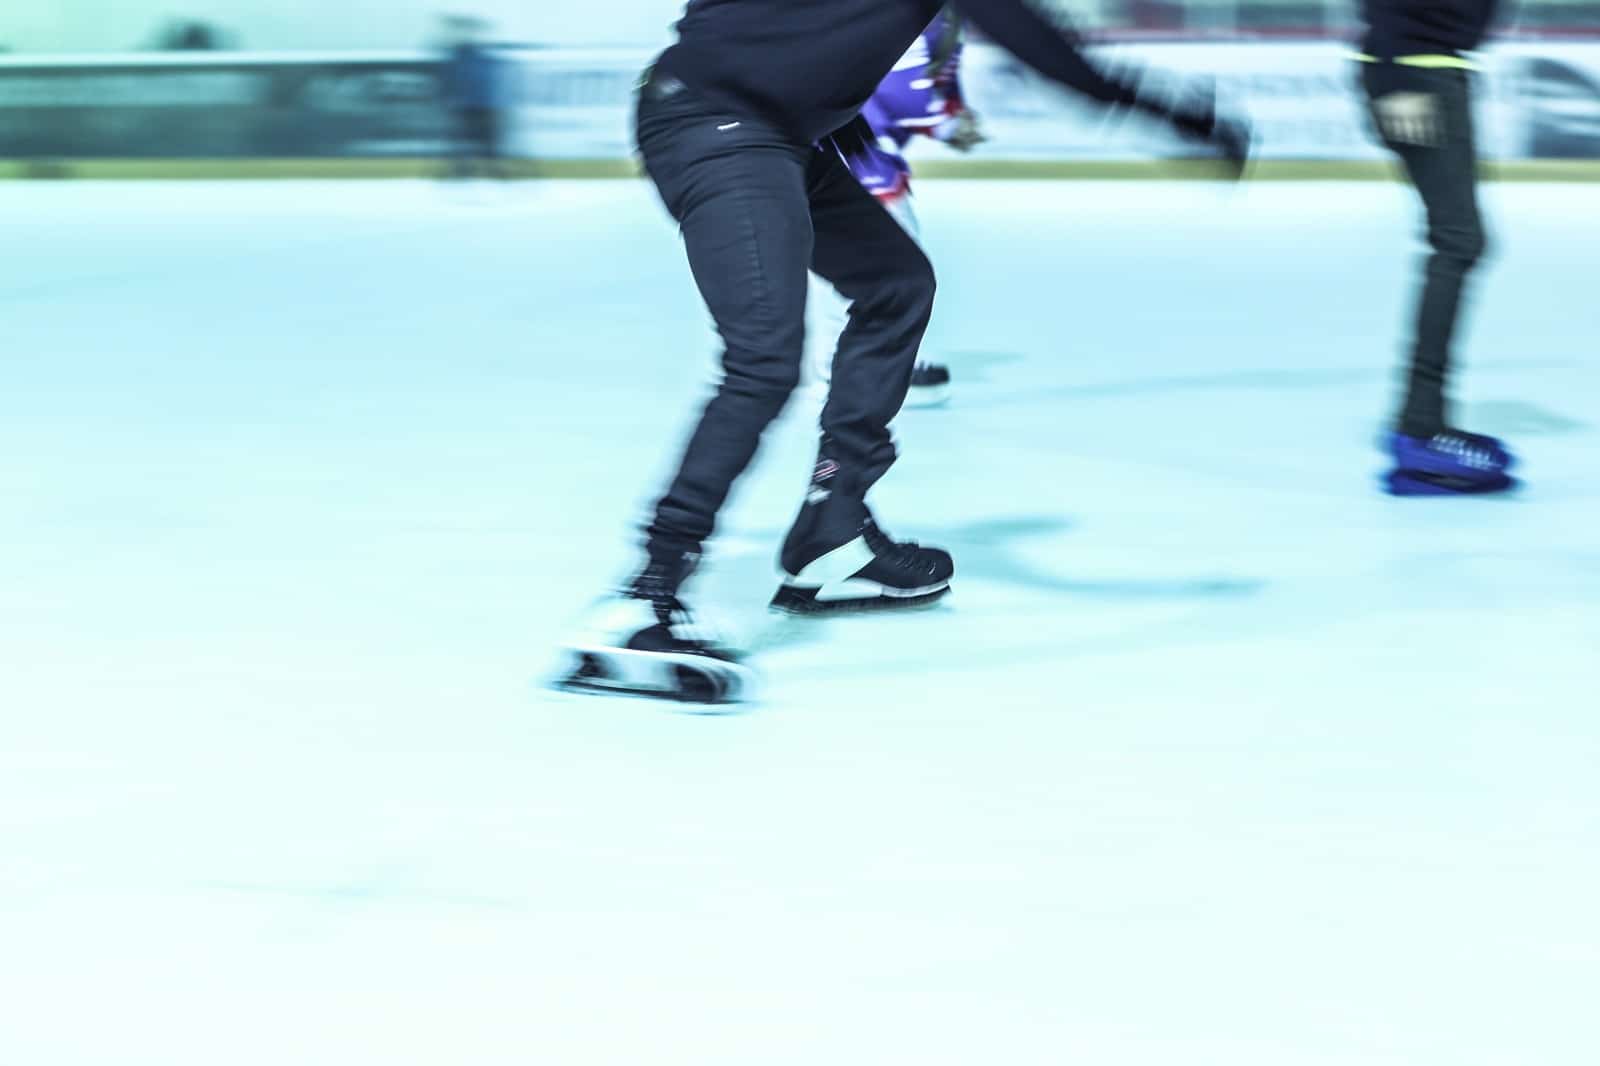 Schlittschuhfahrer auf der Eisfläche im Eisstadion Deggendorf während des Öffentlichen Eislaufs